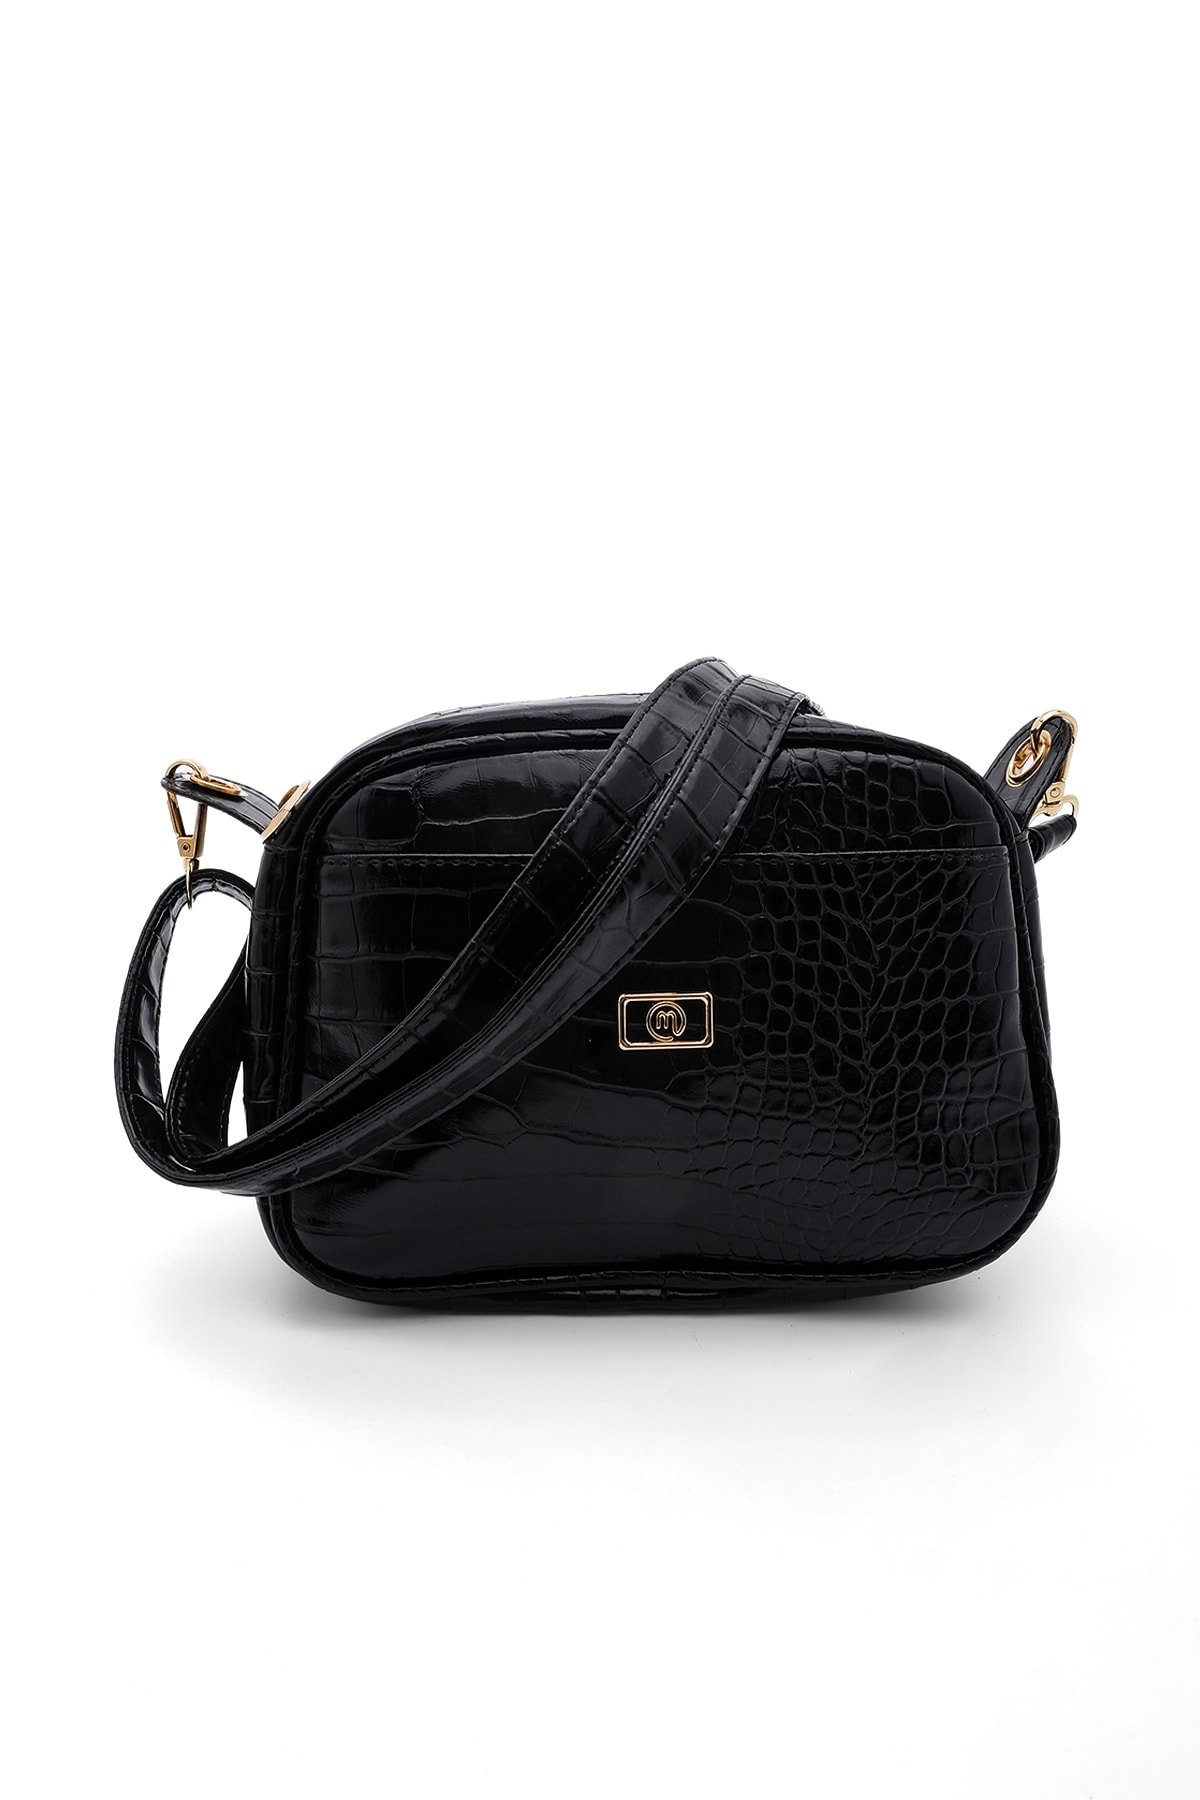 Levně Marjin Tensan Women's Shoulder Bag with Adjustable Straps, black